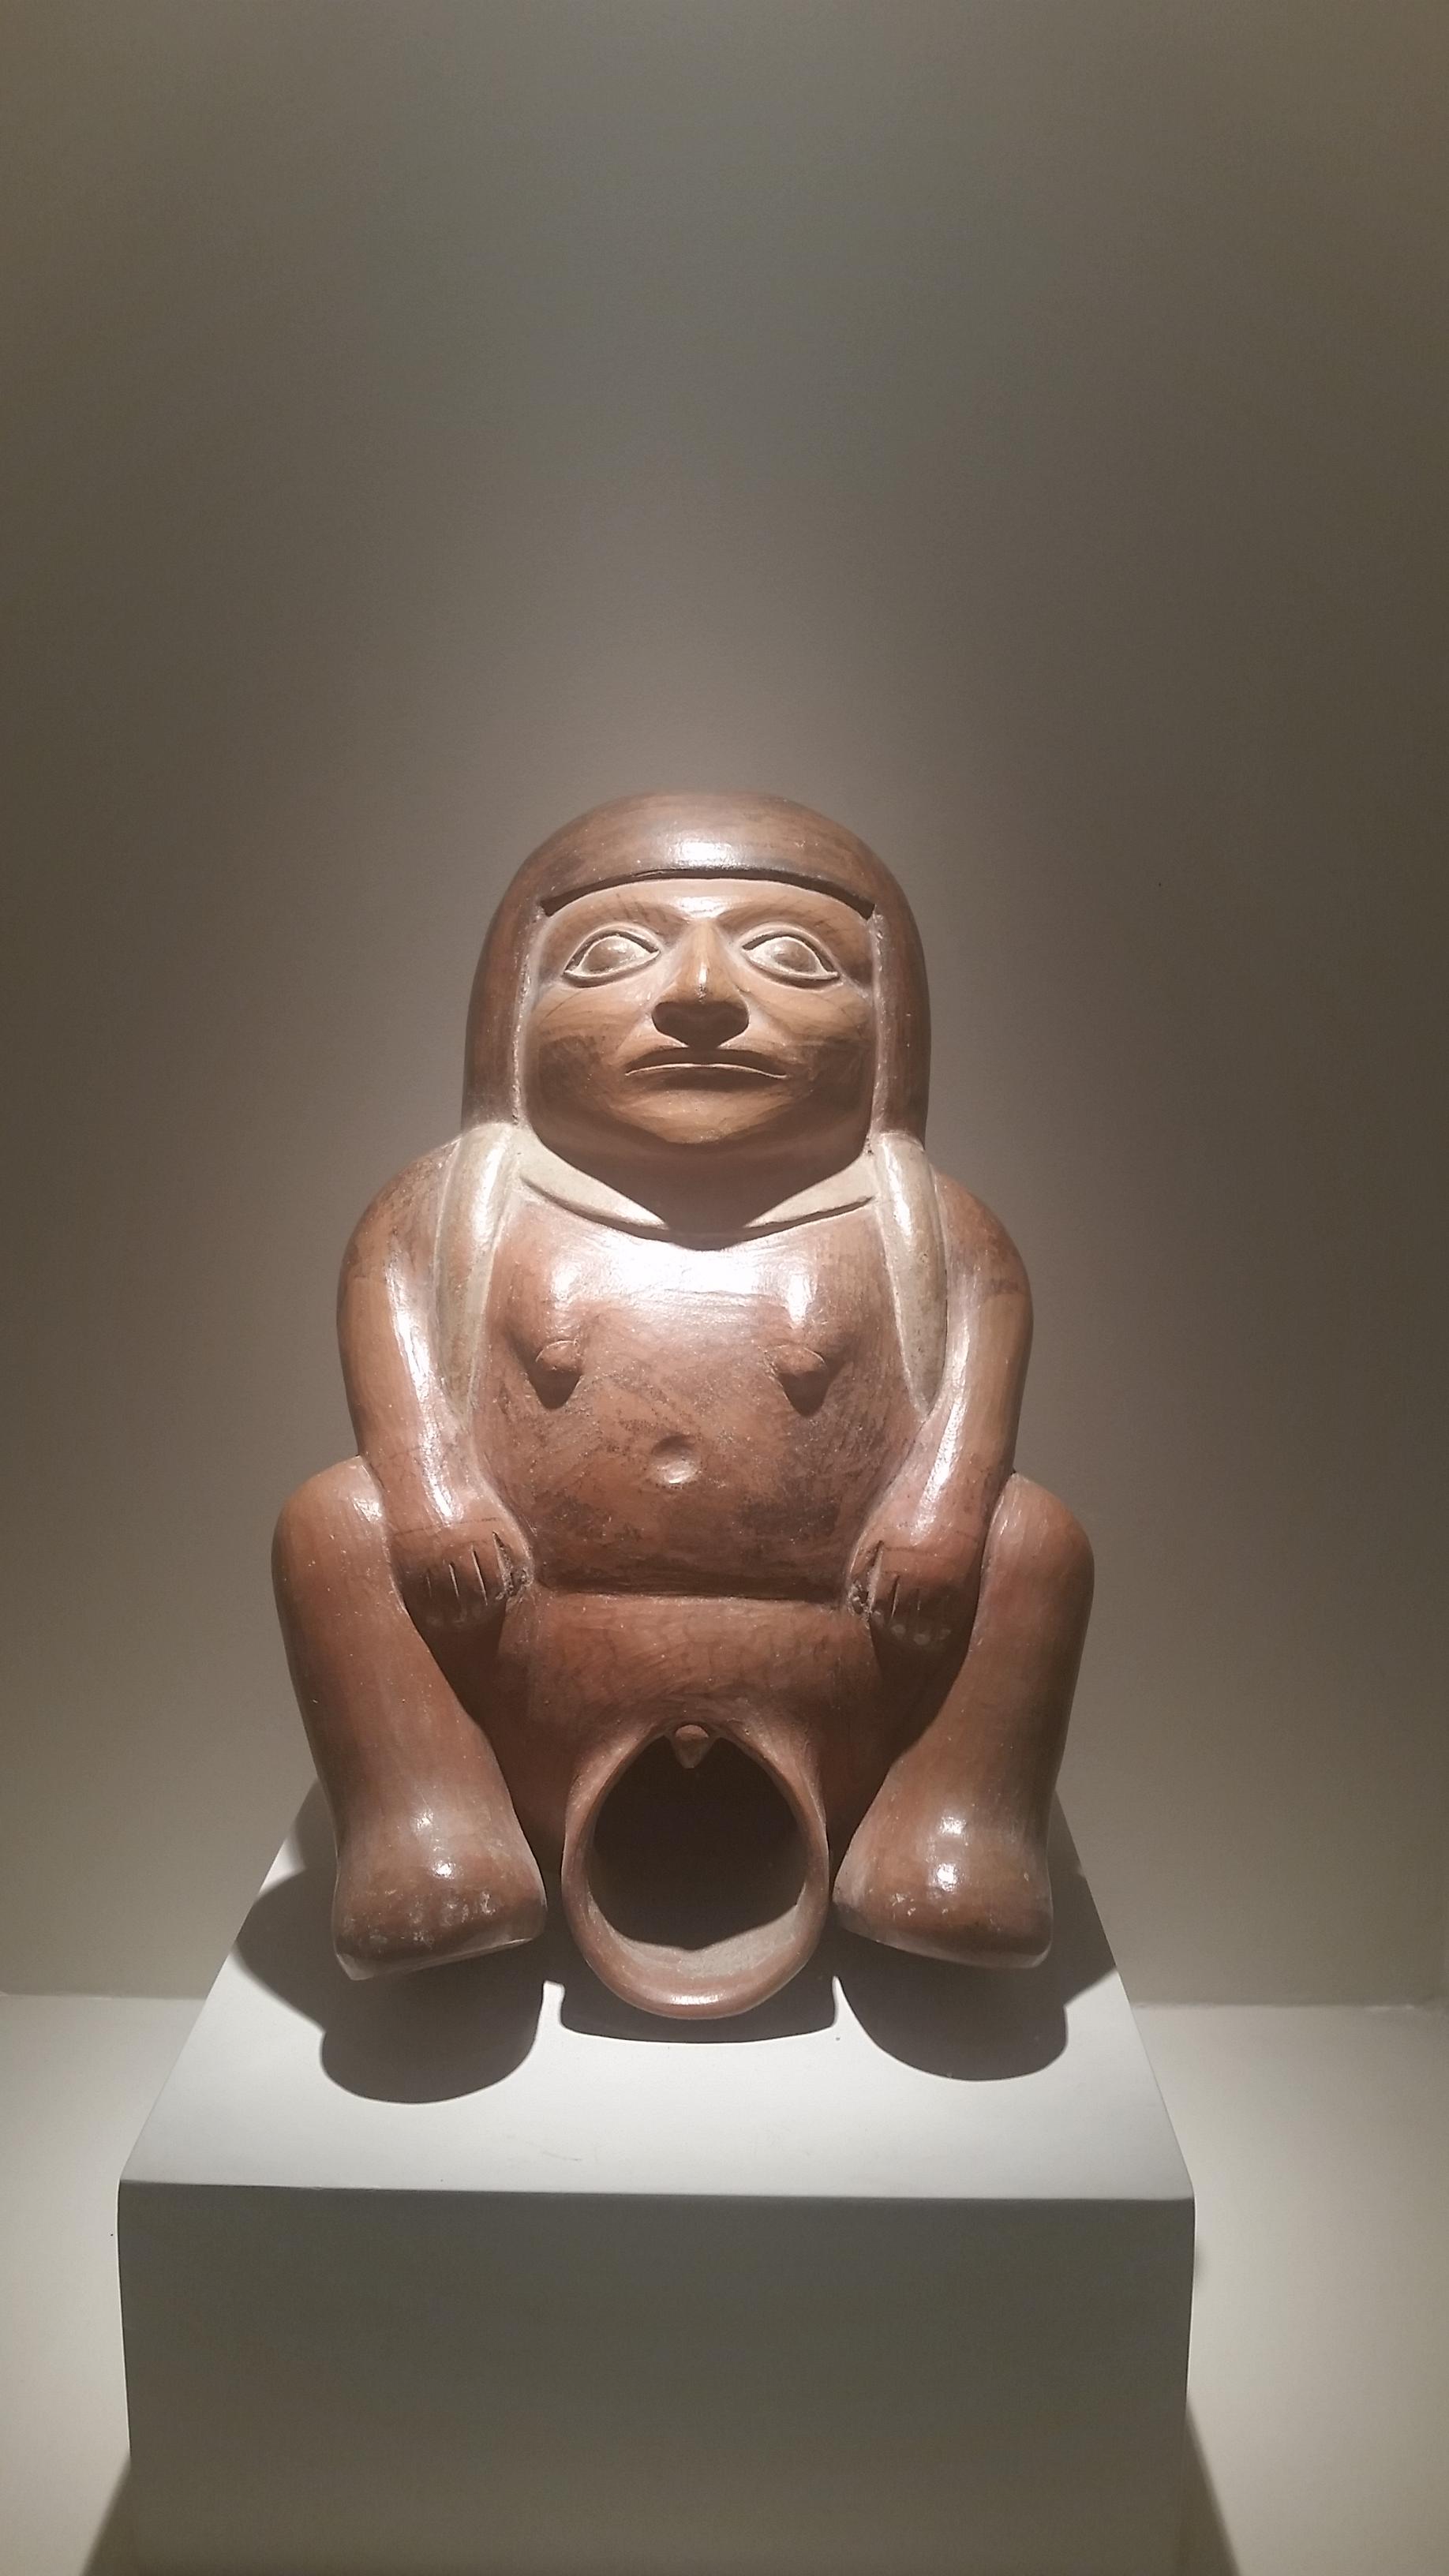 Found OP's mom at a museum in Peru